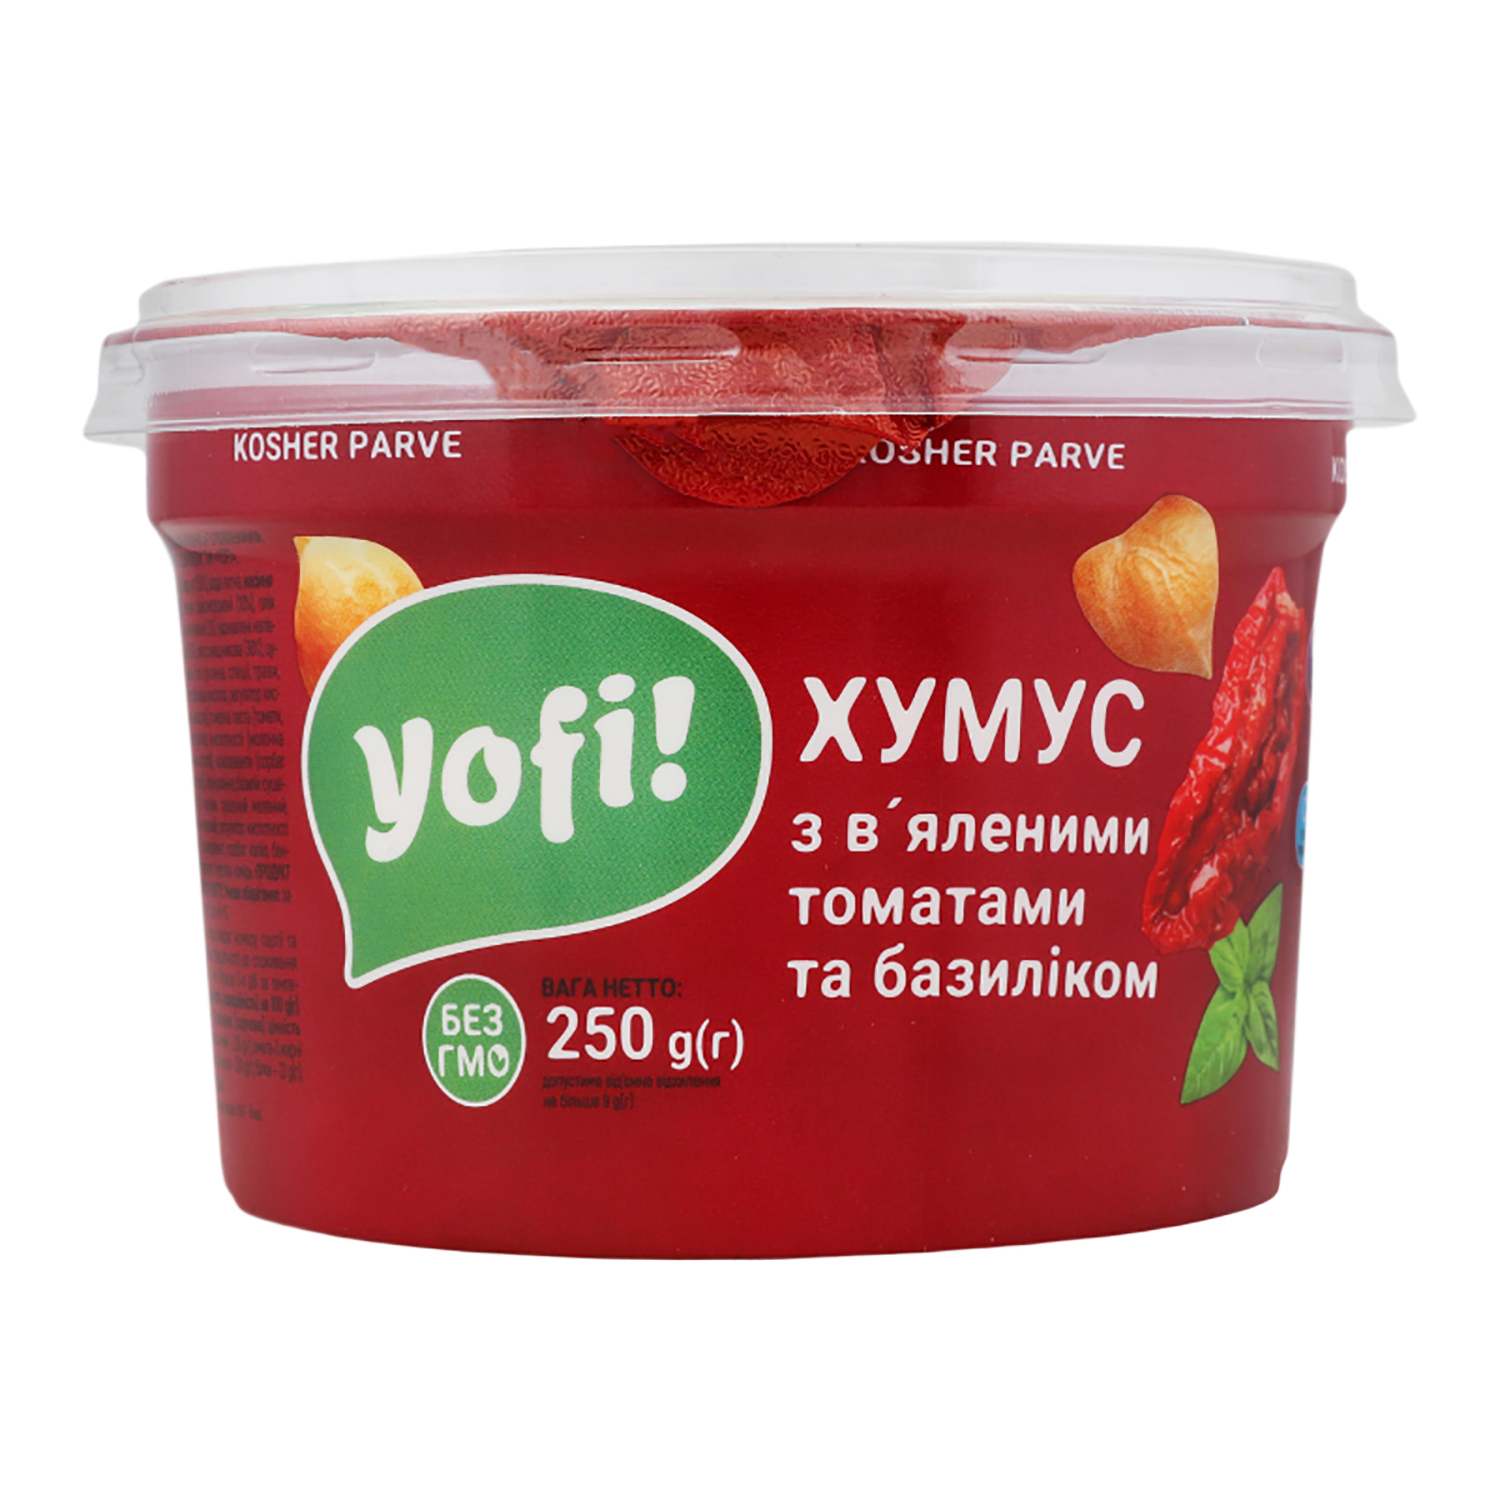 Хумус Yofi! с вялеными томатами и базиликом 250г